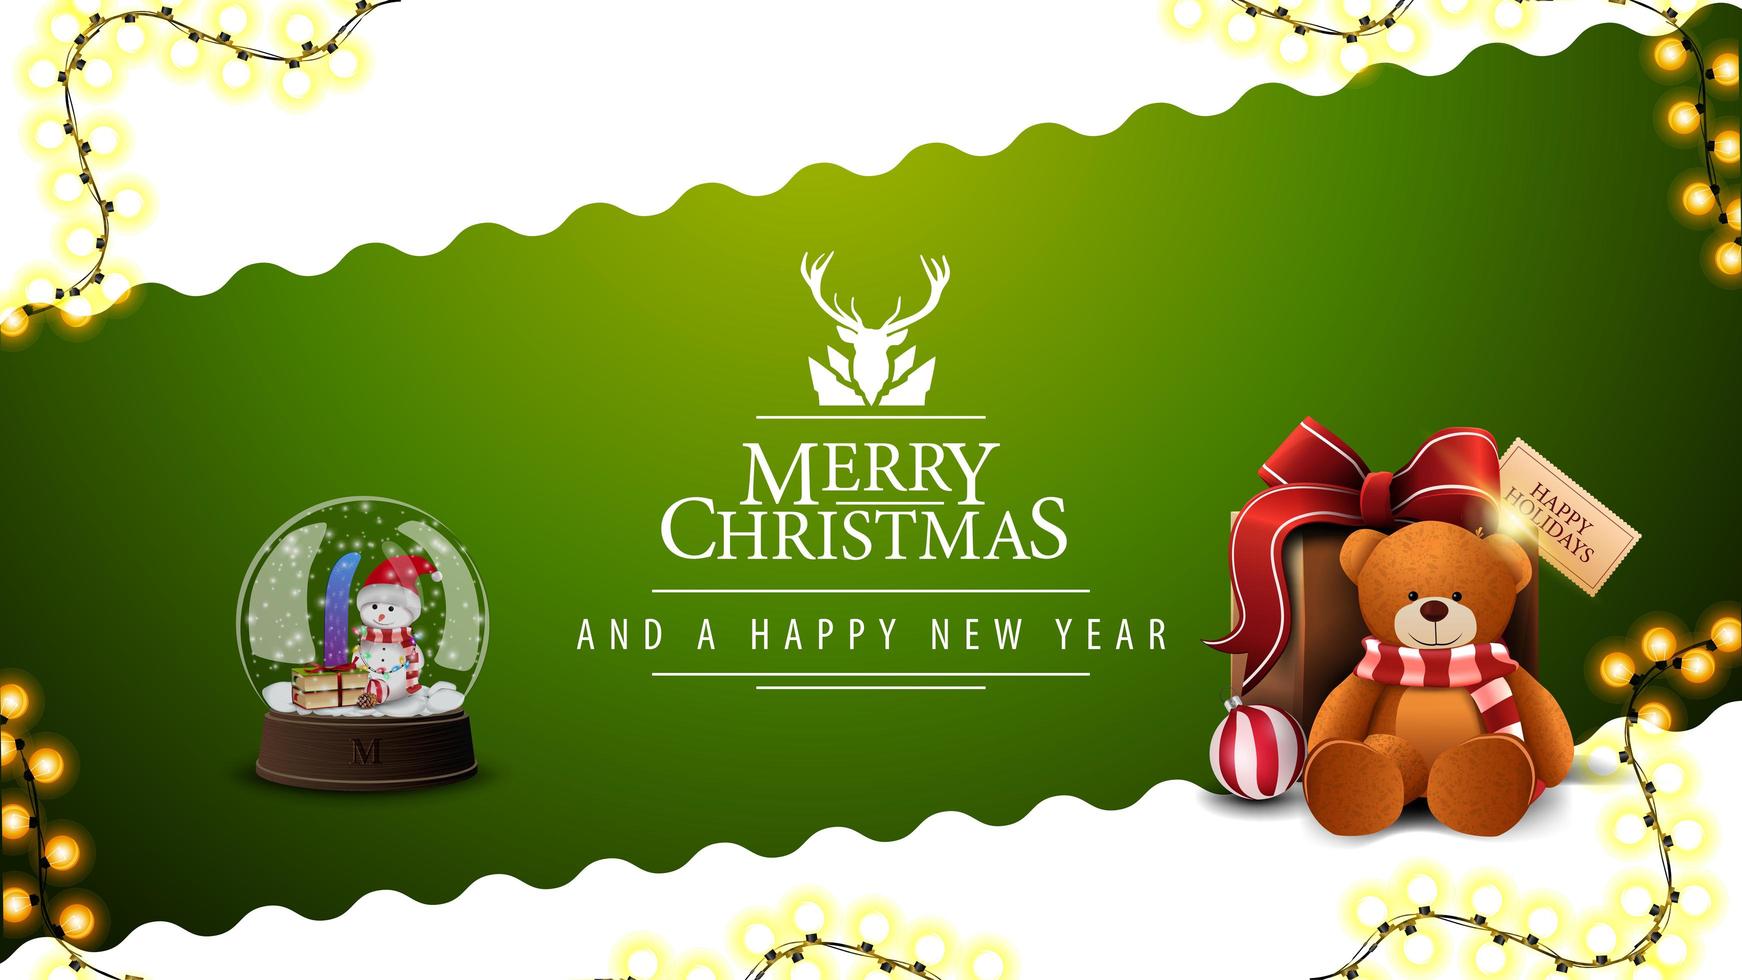 Joyeux Noël et bonne année, carte postale verte et blanche avec ligne diagonale ondulée, guirlande, logo de voeux avec cerf, boule à neige et cadeau avec ours en peluche vecteur